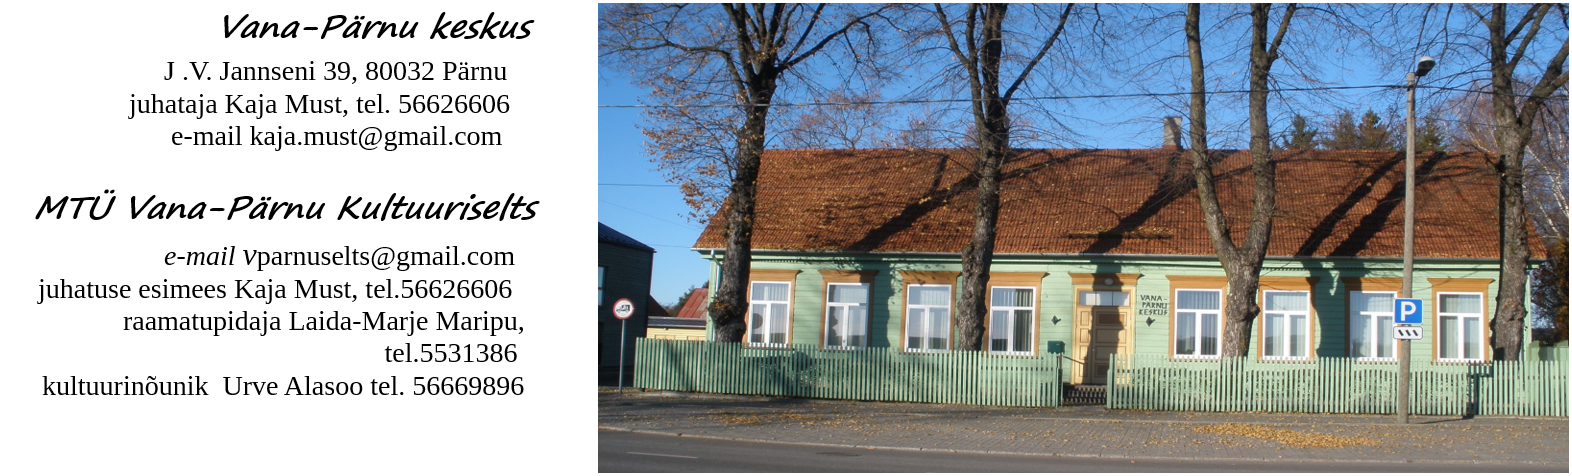 Vana-Pärnu keskus